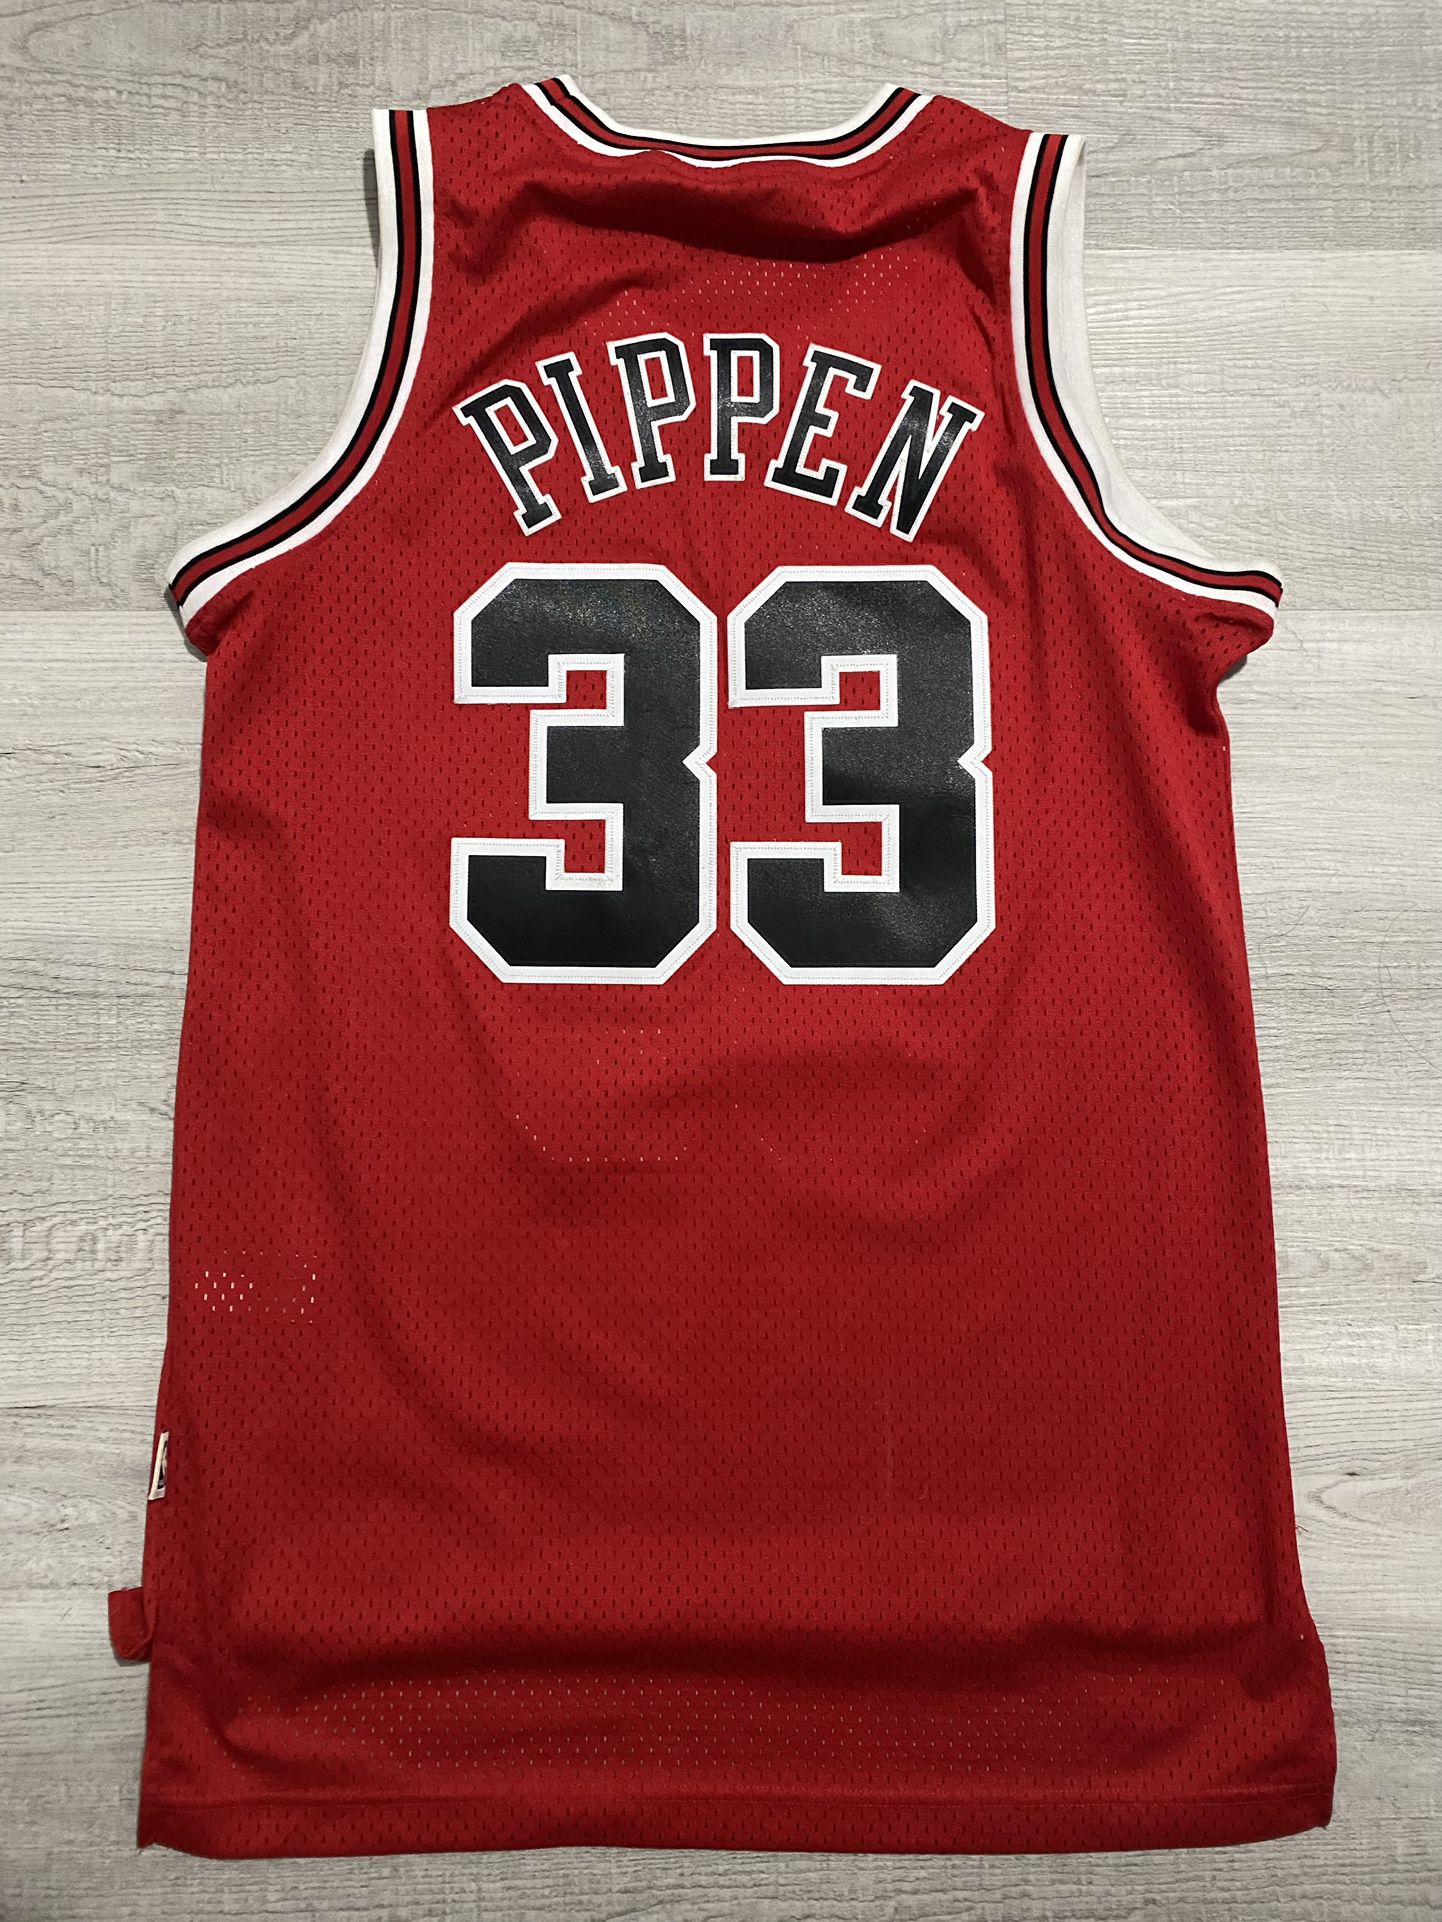 Scottie Pippen Reload Swingman Jersey for Sale in Las Vegas, NV - OfferUp